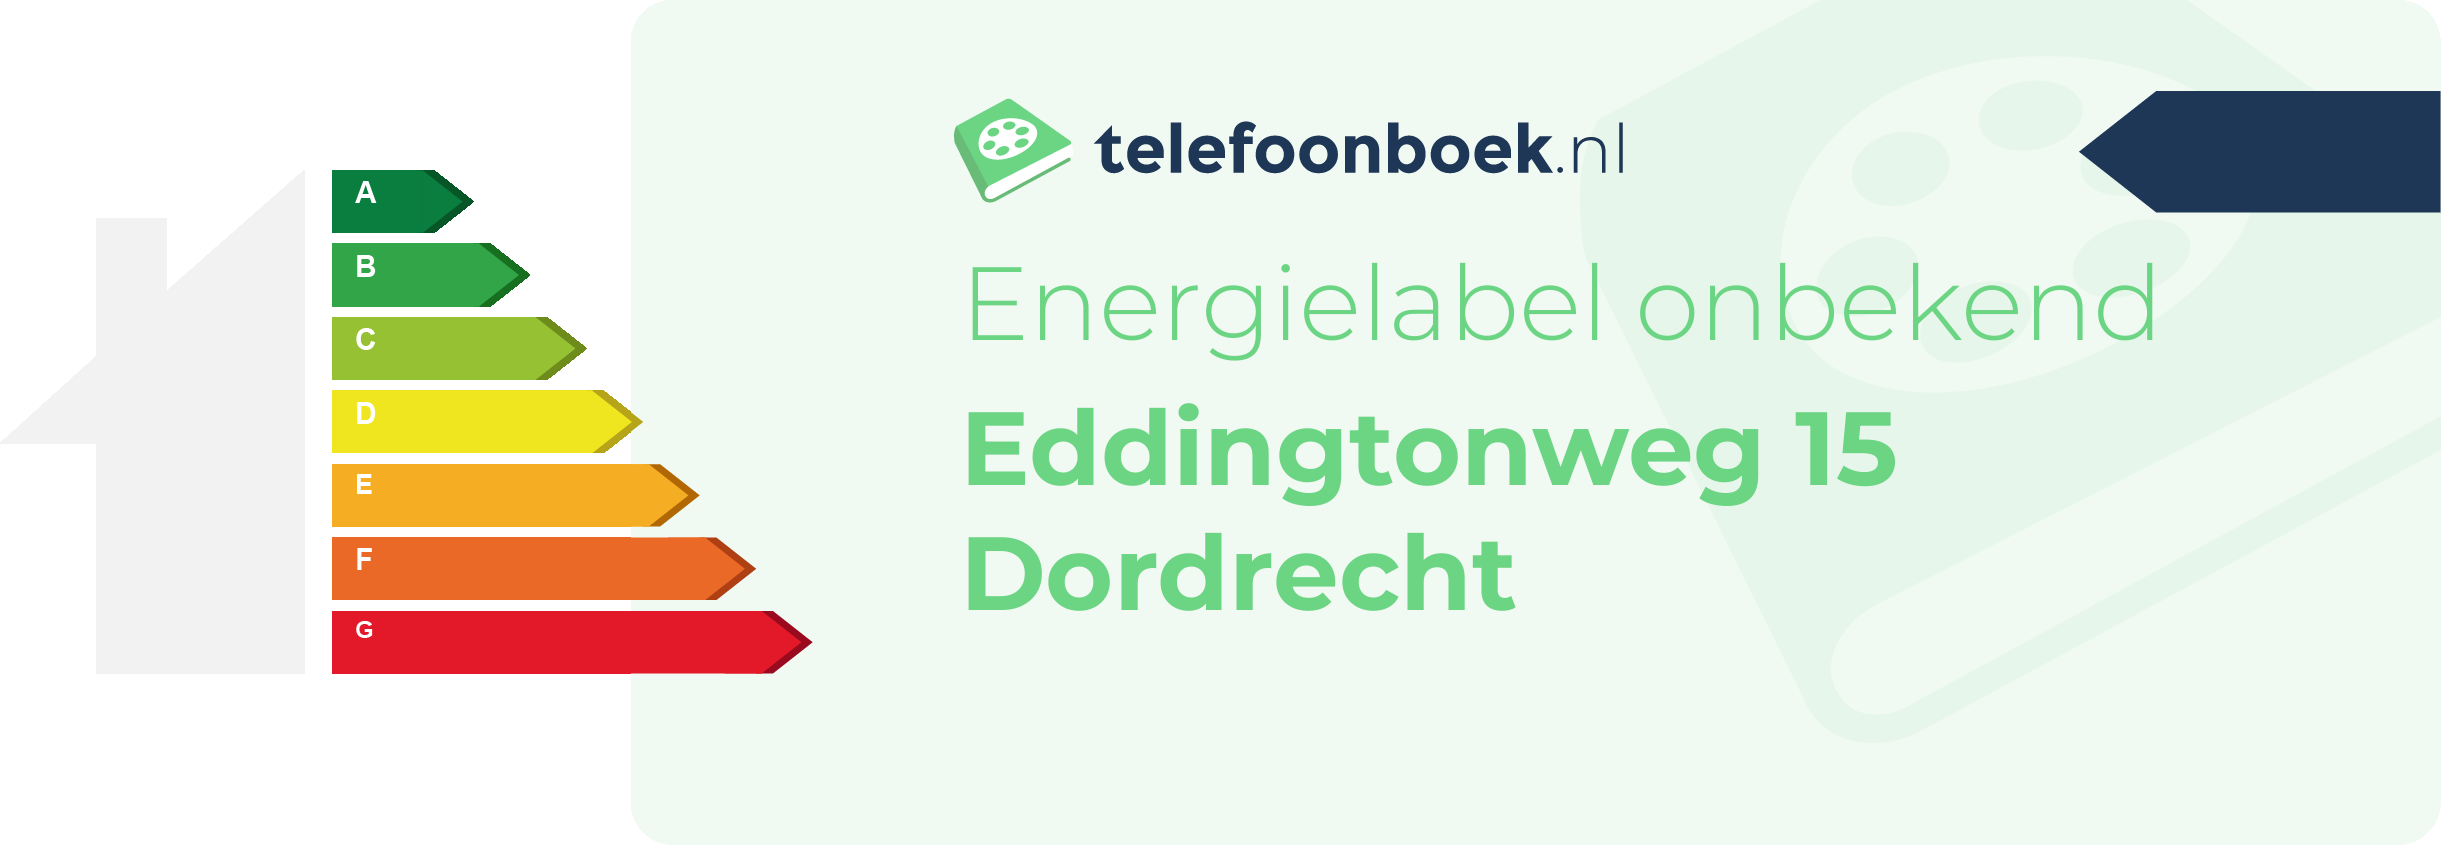 Energielabel Eddingtonweg 15 Dordrecht